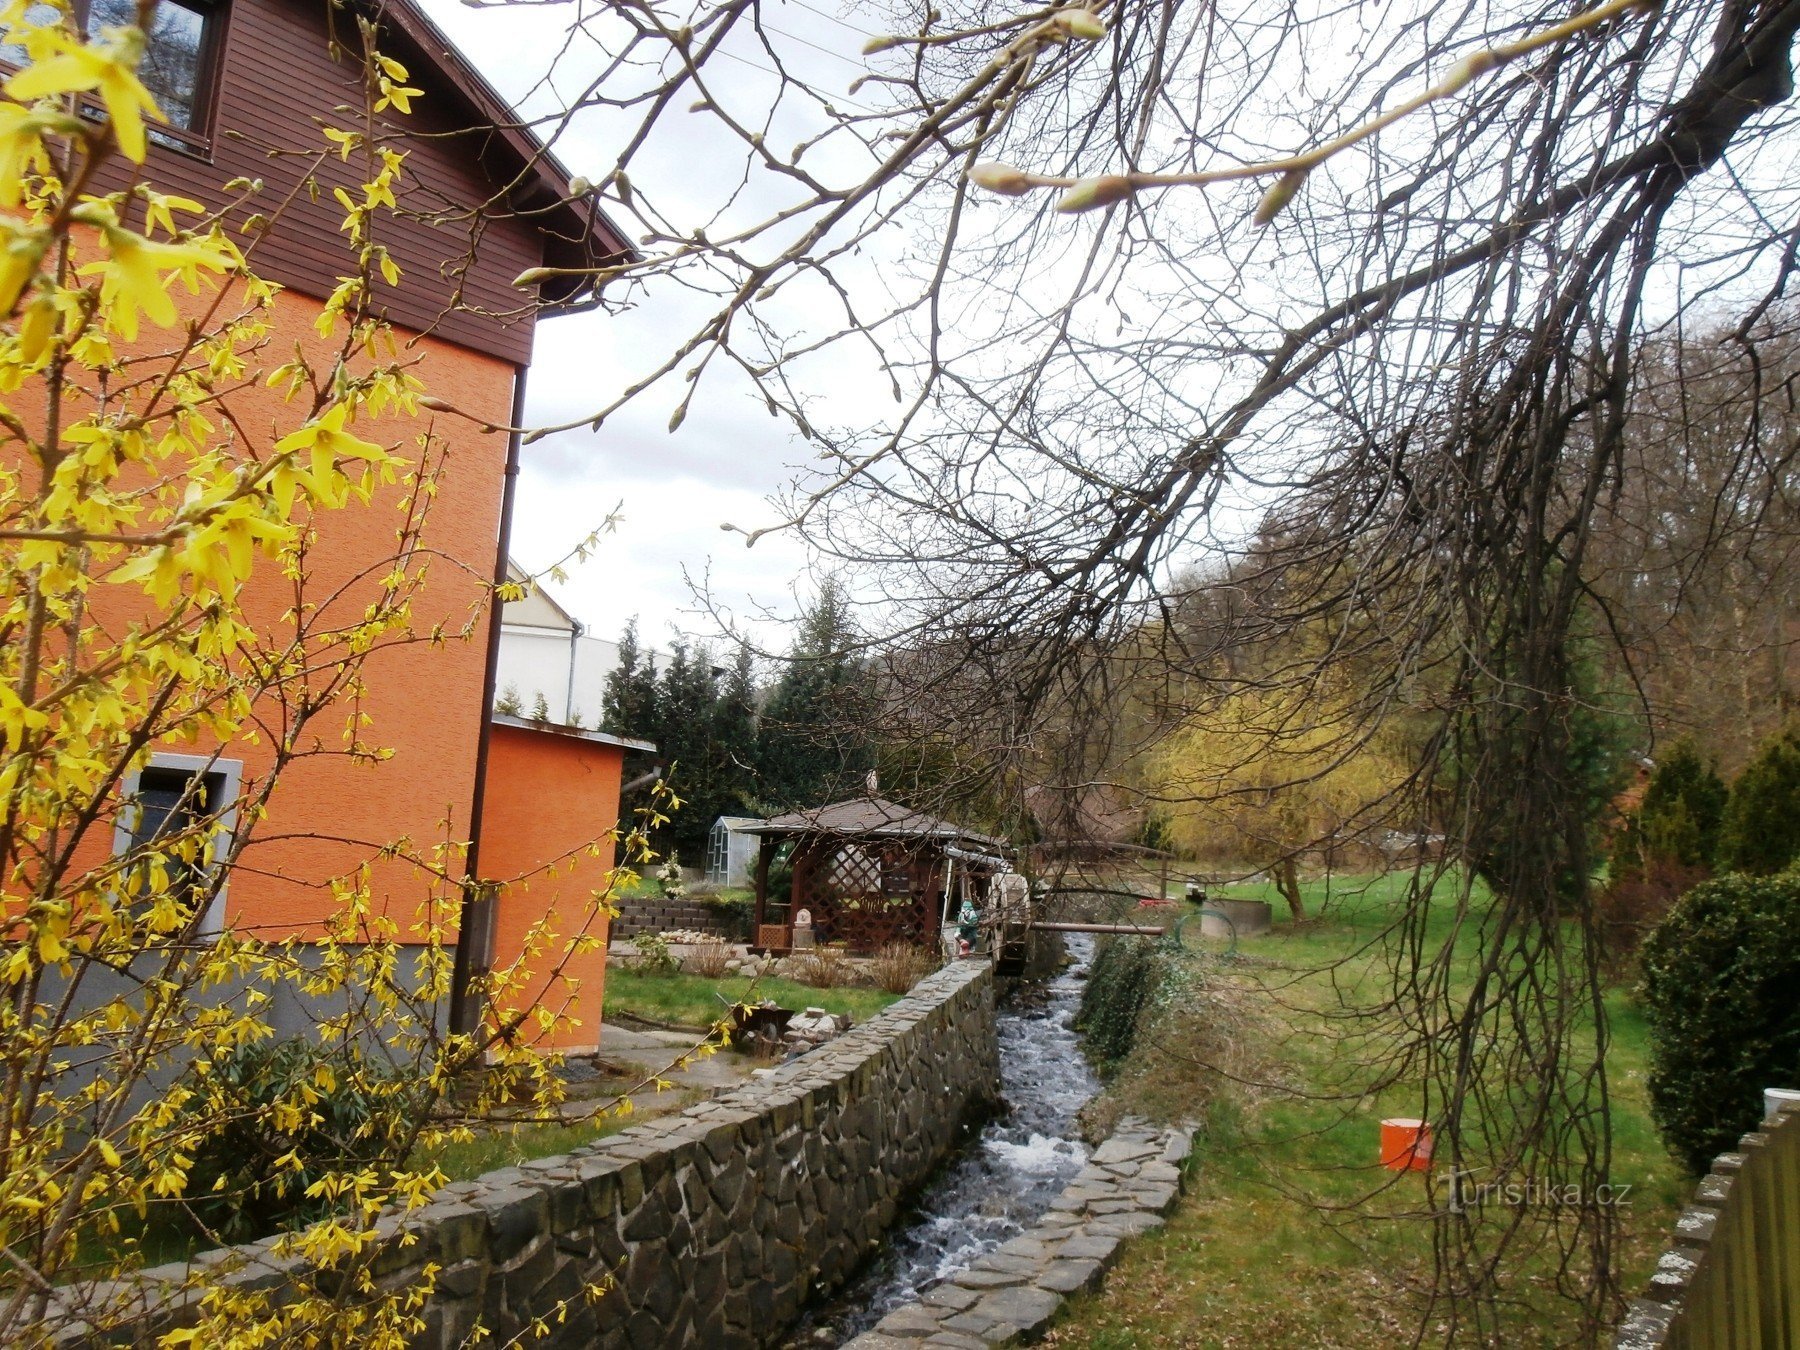 Ruisseau Domaslavický avec un ruisseau et une roue de moulin